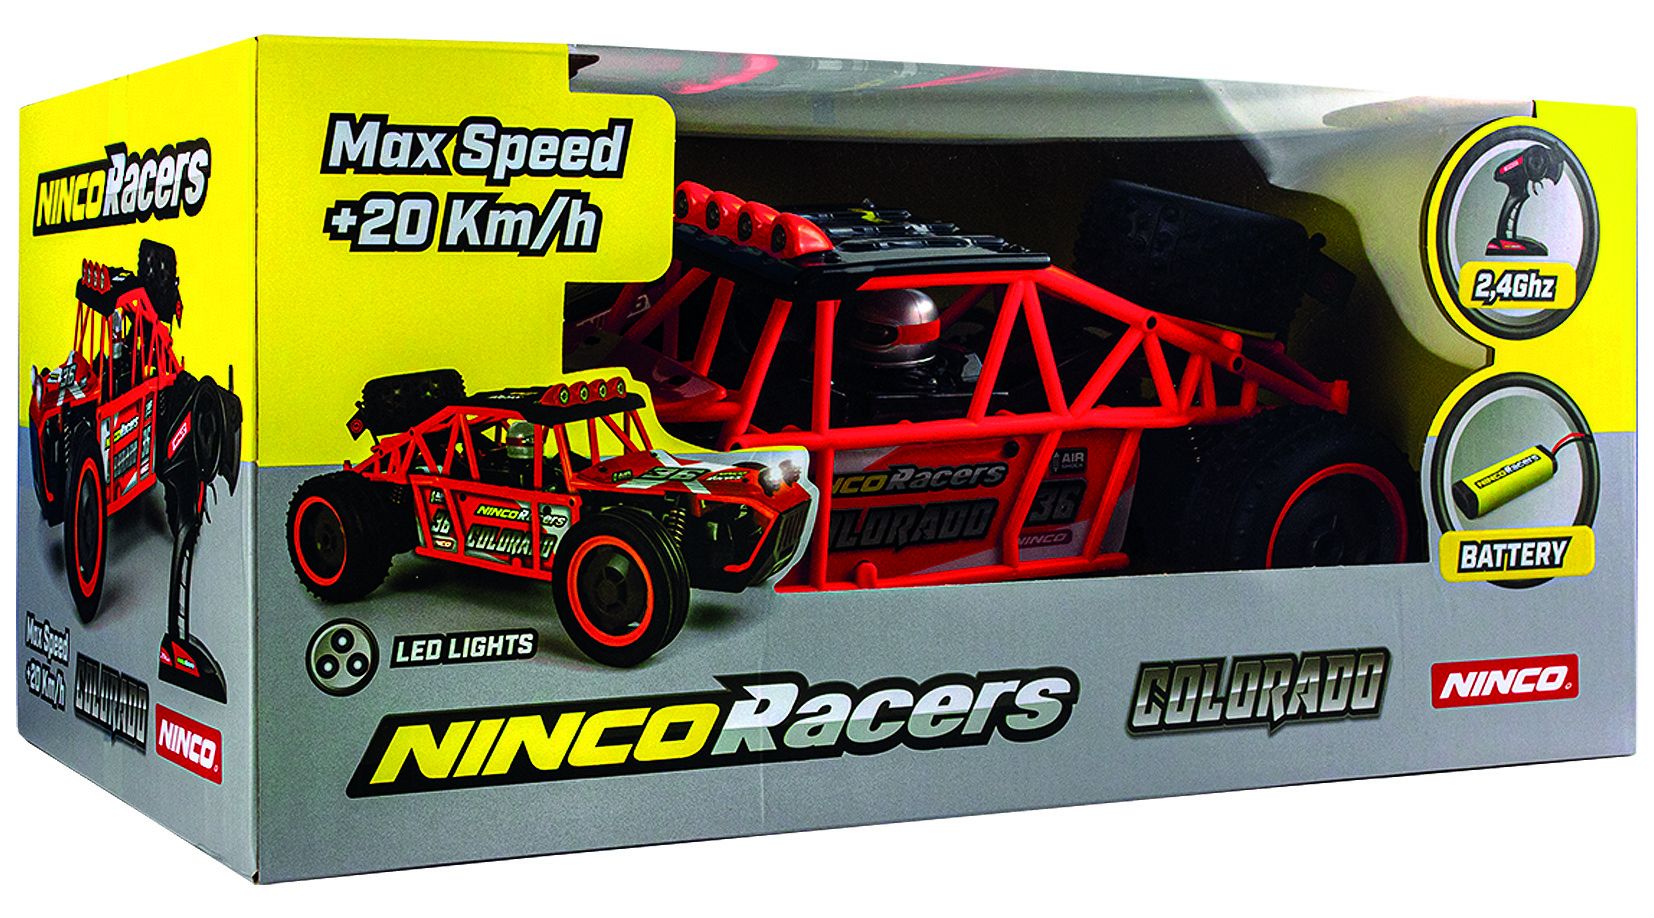 Ninco Racers Colorado 